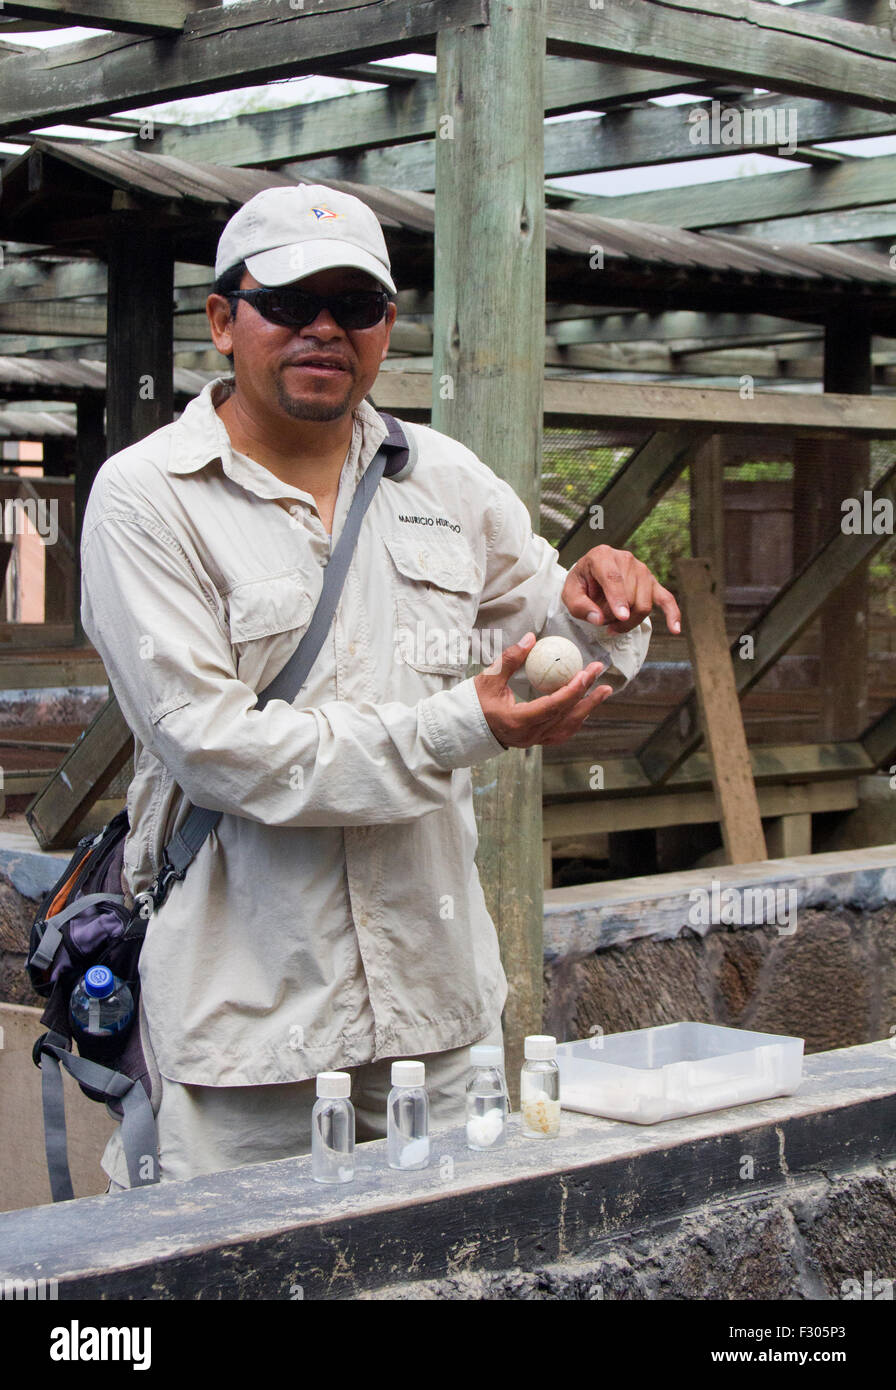 Guide expliquant l'élevage de tortues terrestres au Centro de Crianza de Tortugas terrestres, l'île Isabela, Îles Galápagos Banque D'Images